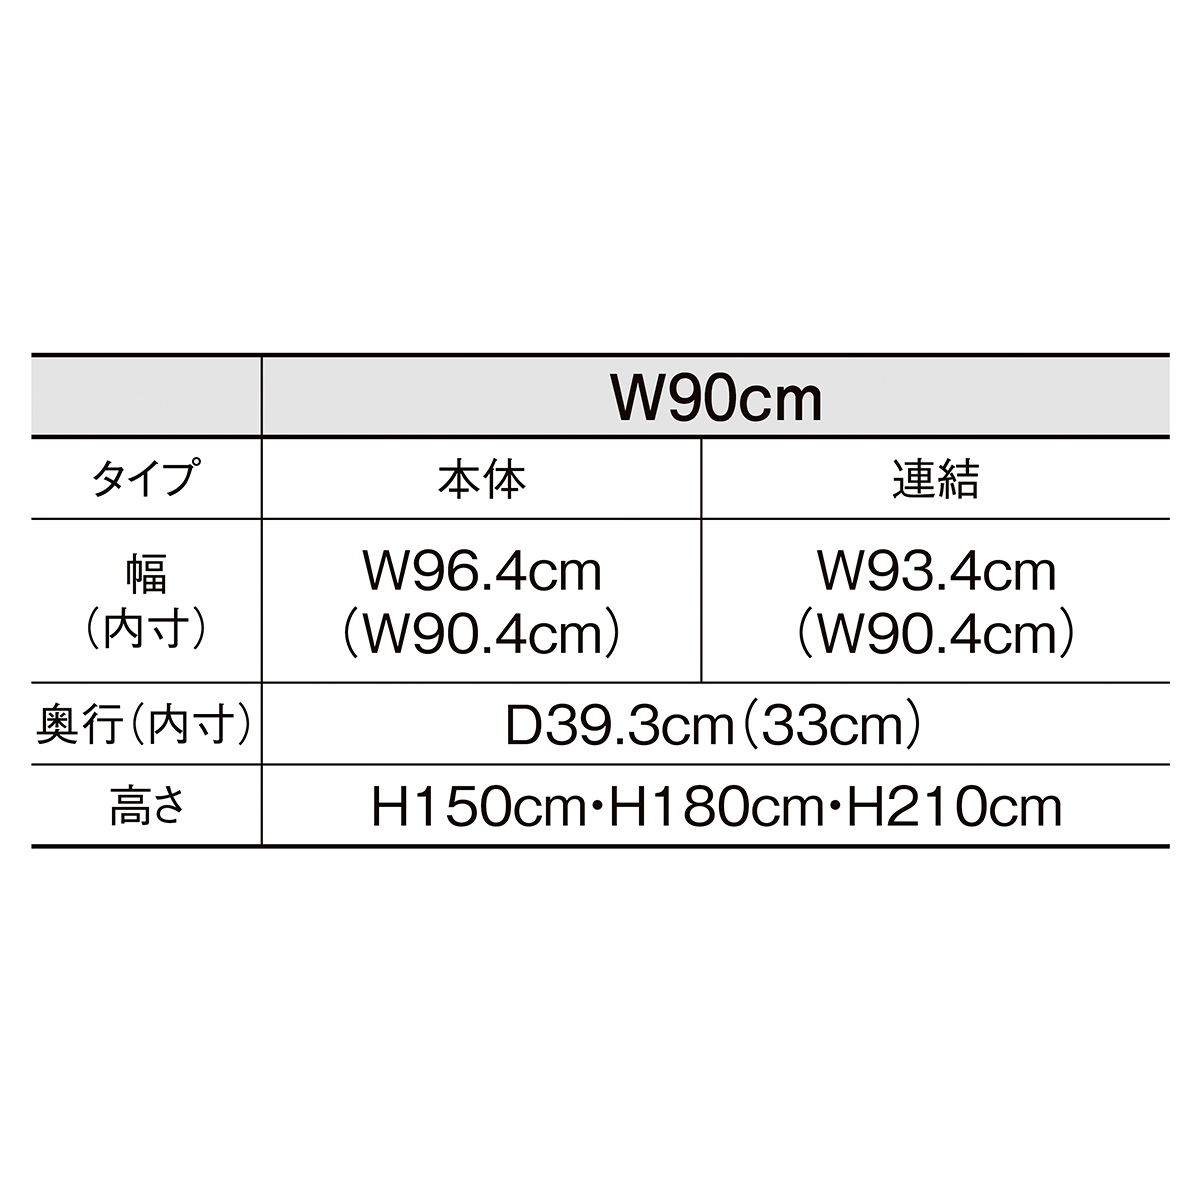 TR ネットタイプ W90cm 本体 ブラック H150cm 【通販】ストア・エキスプレス